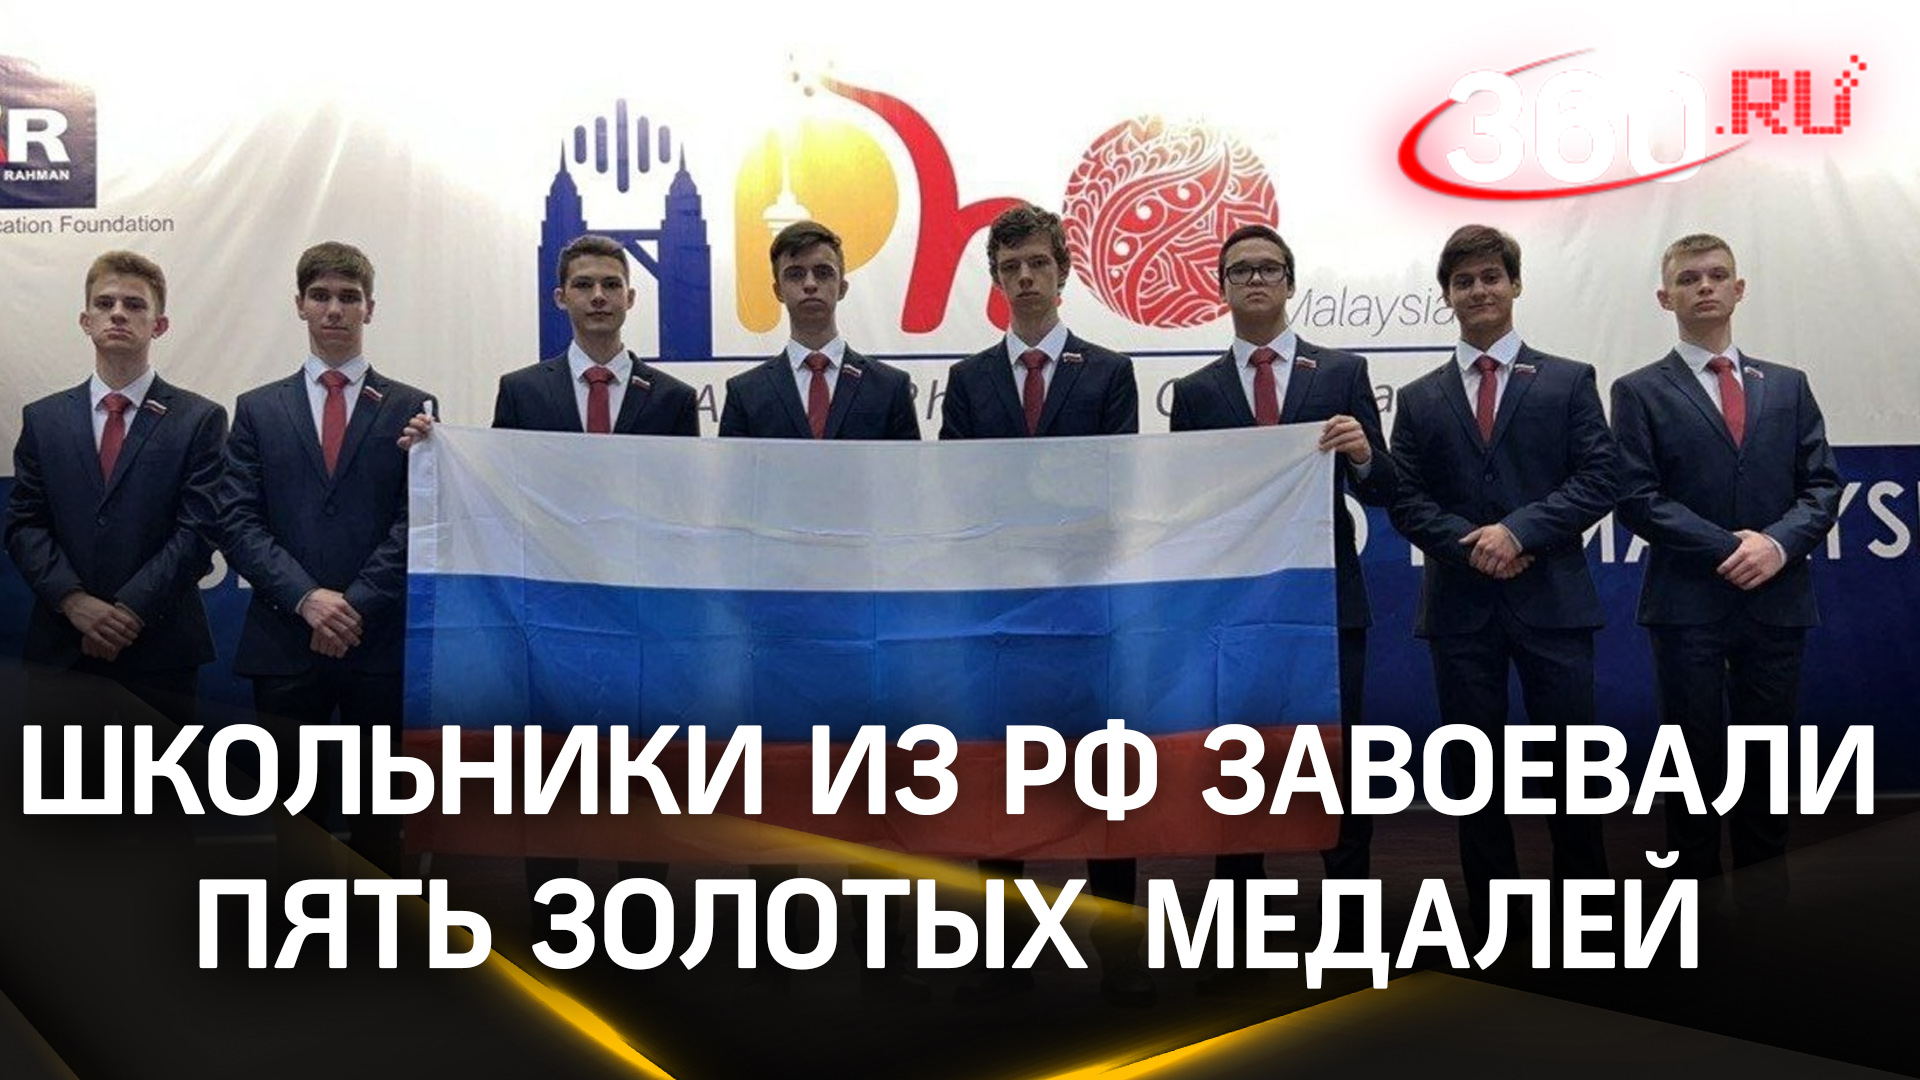 Лицеисты из Подмосковья завоевали пять золотых медалей на Азиатской физической олимпиаде